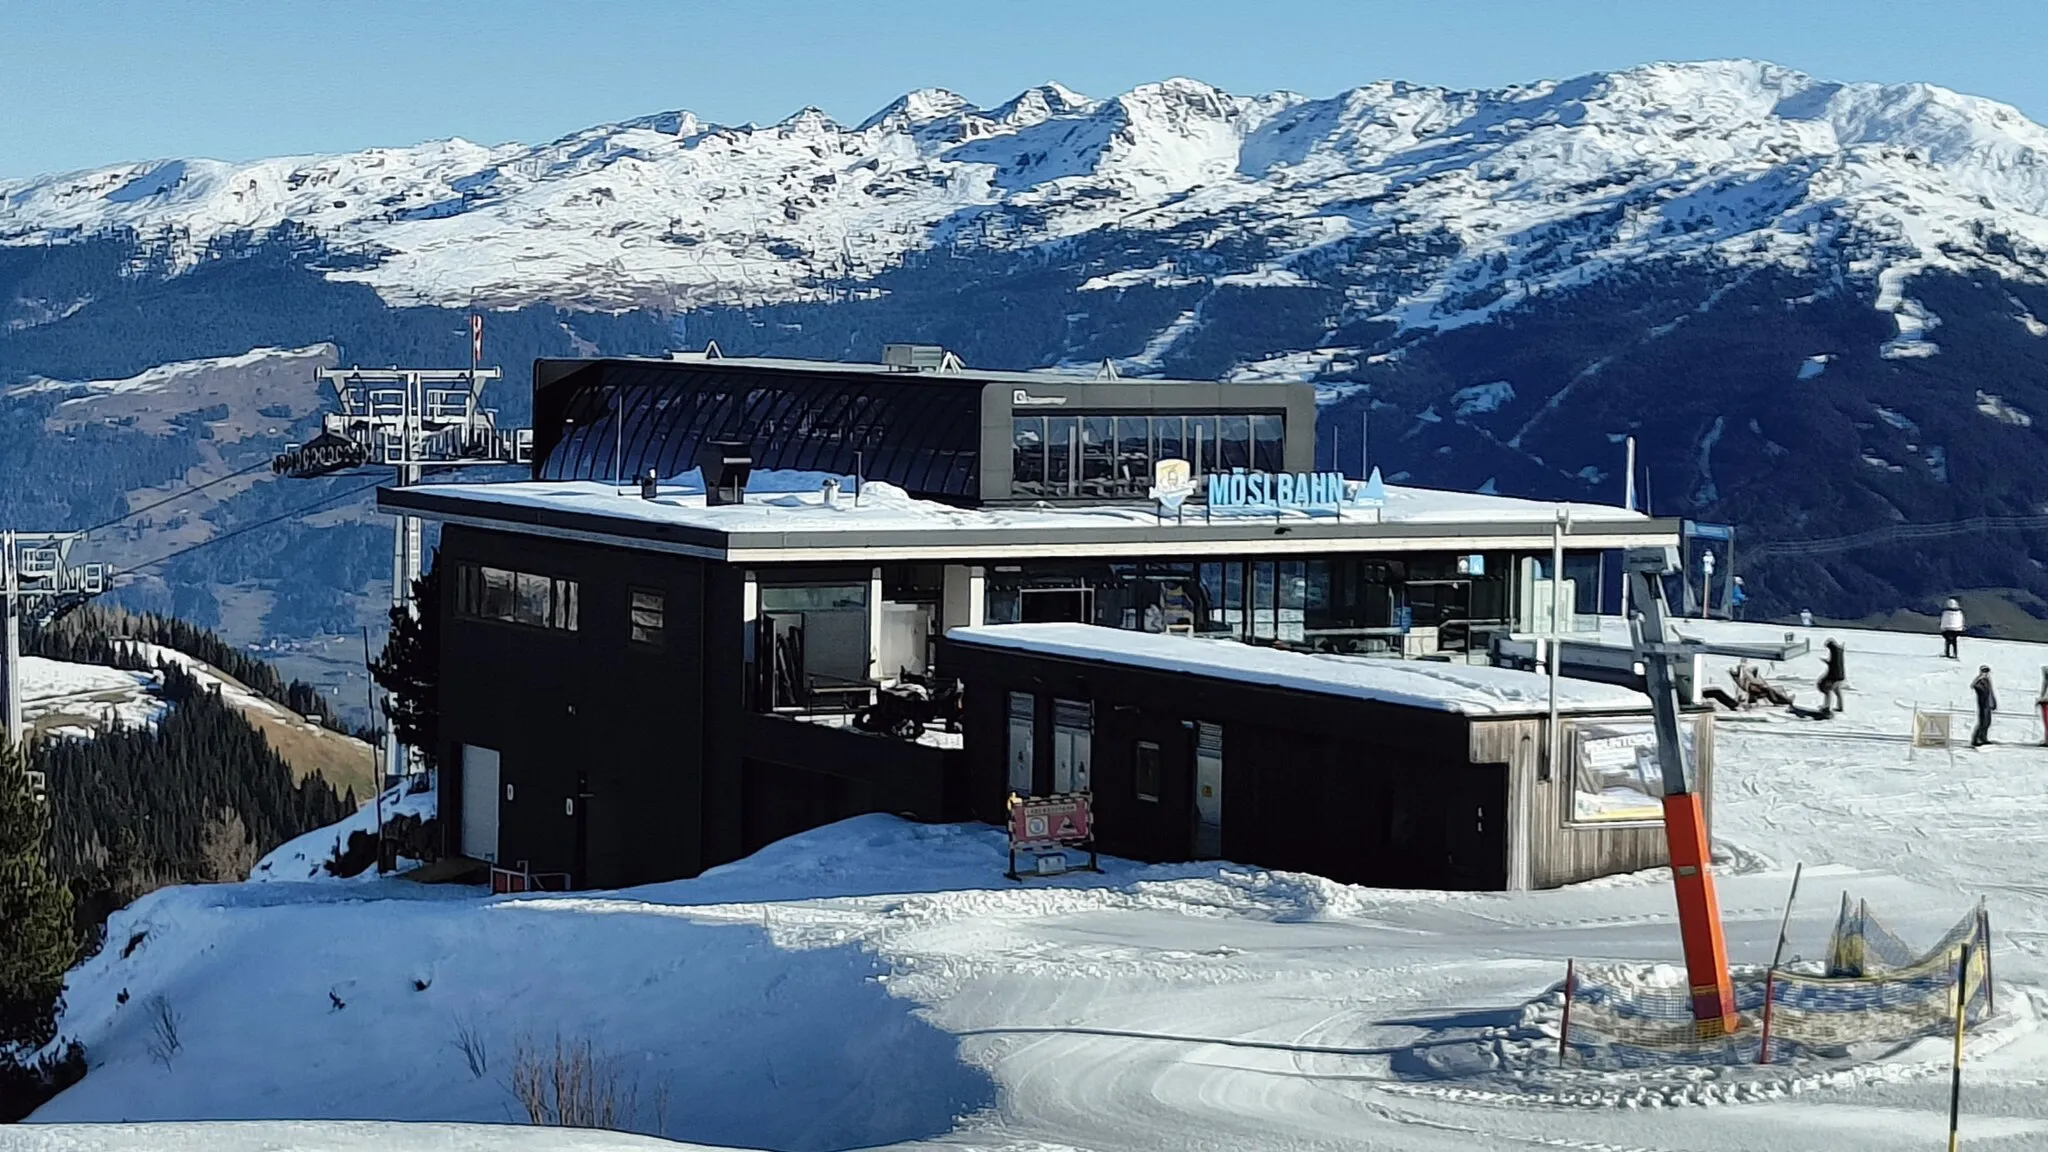 Photo showing: Bergstation der Einseilumlaufbahn Möslbahn im Skigebiet Penken (Tirol).